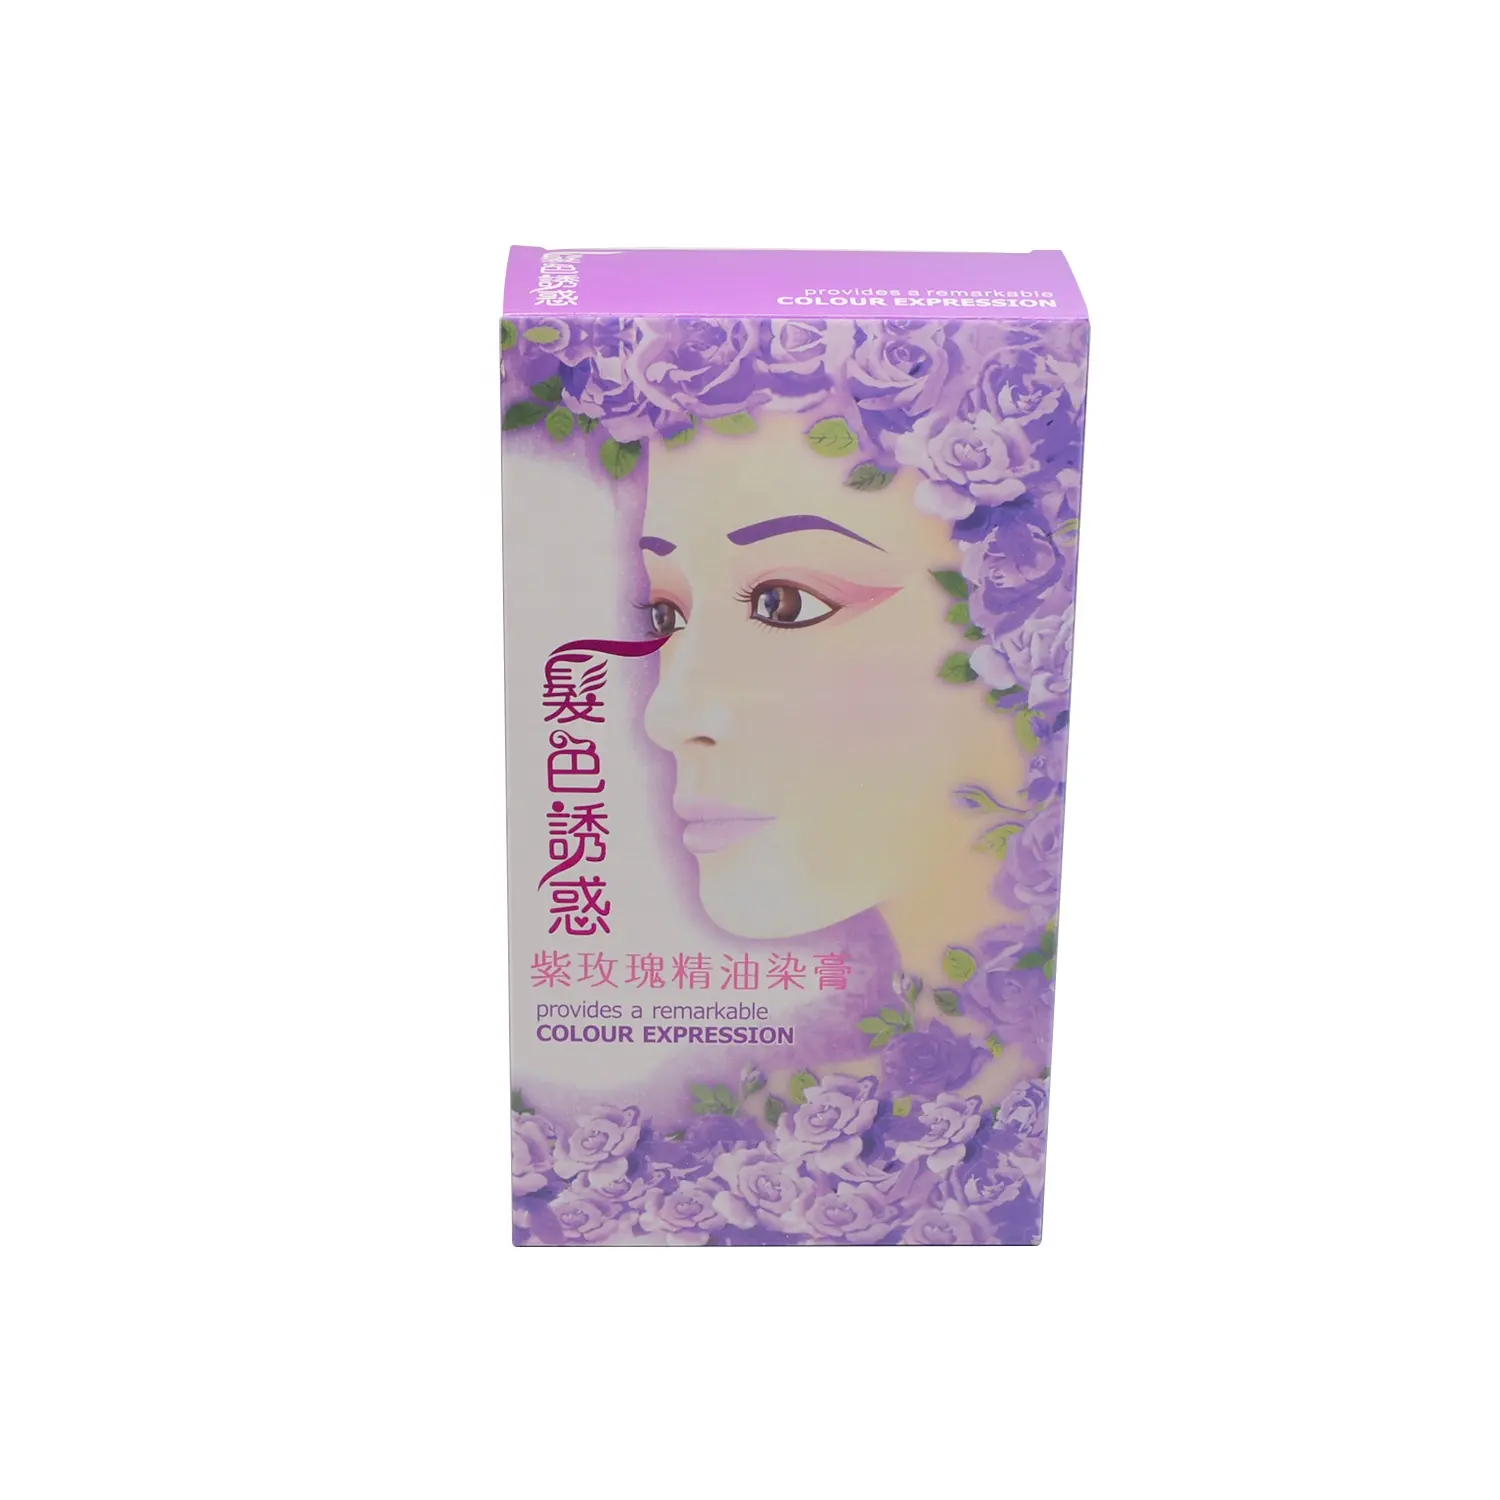 カスタムエコフレンドリー化粧品ボックス印刷ロゴ紙包装化粧品口紅包装ボックス